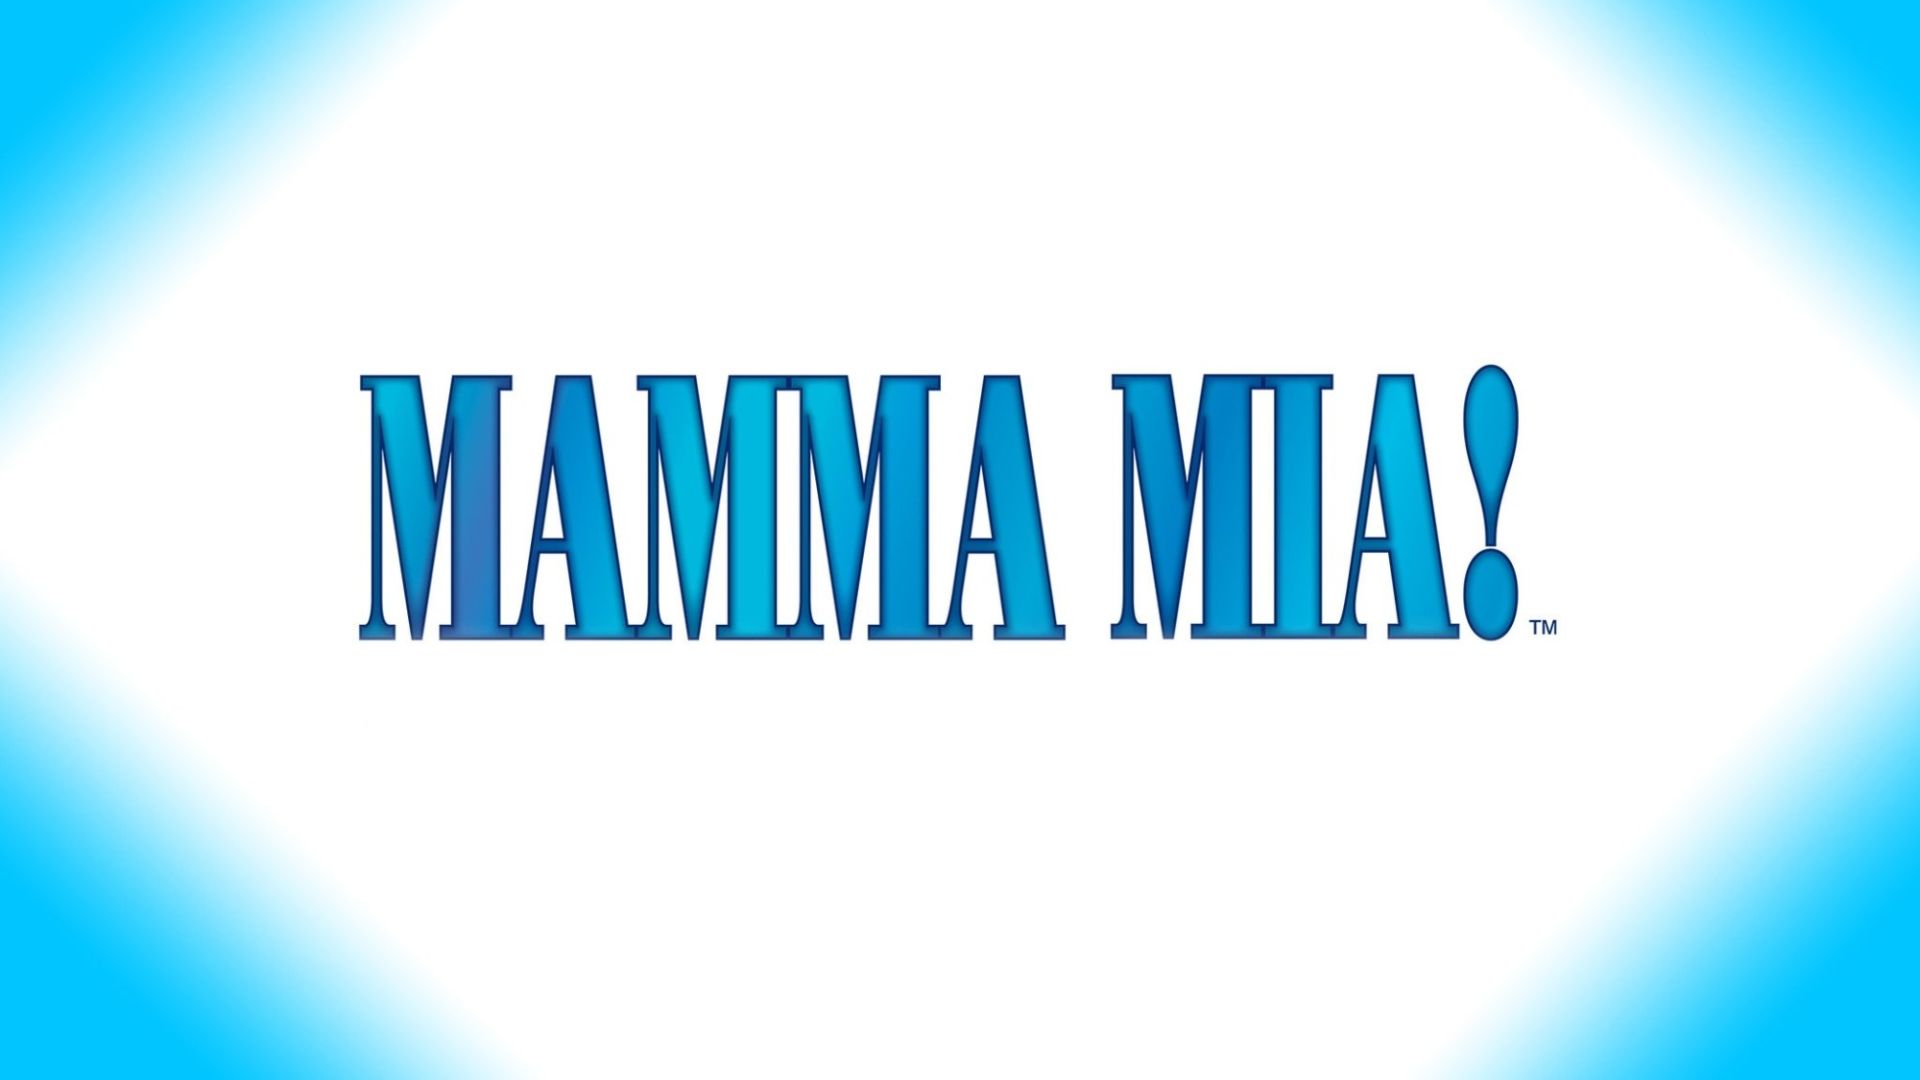 Mamma Mia! Il Musical